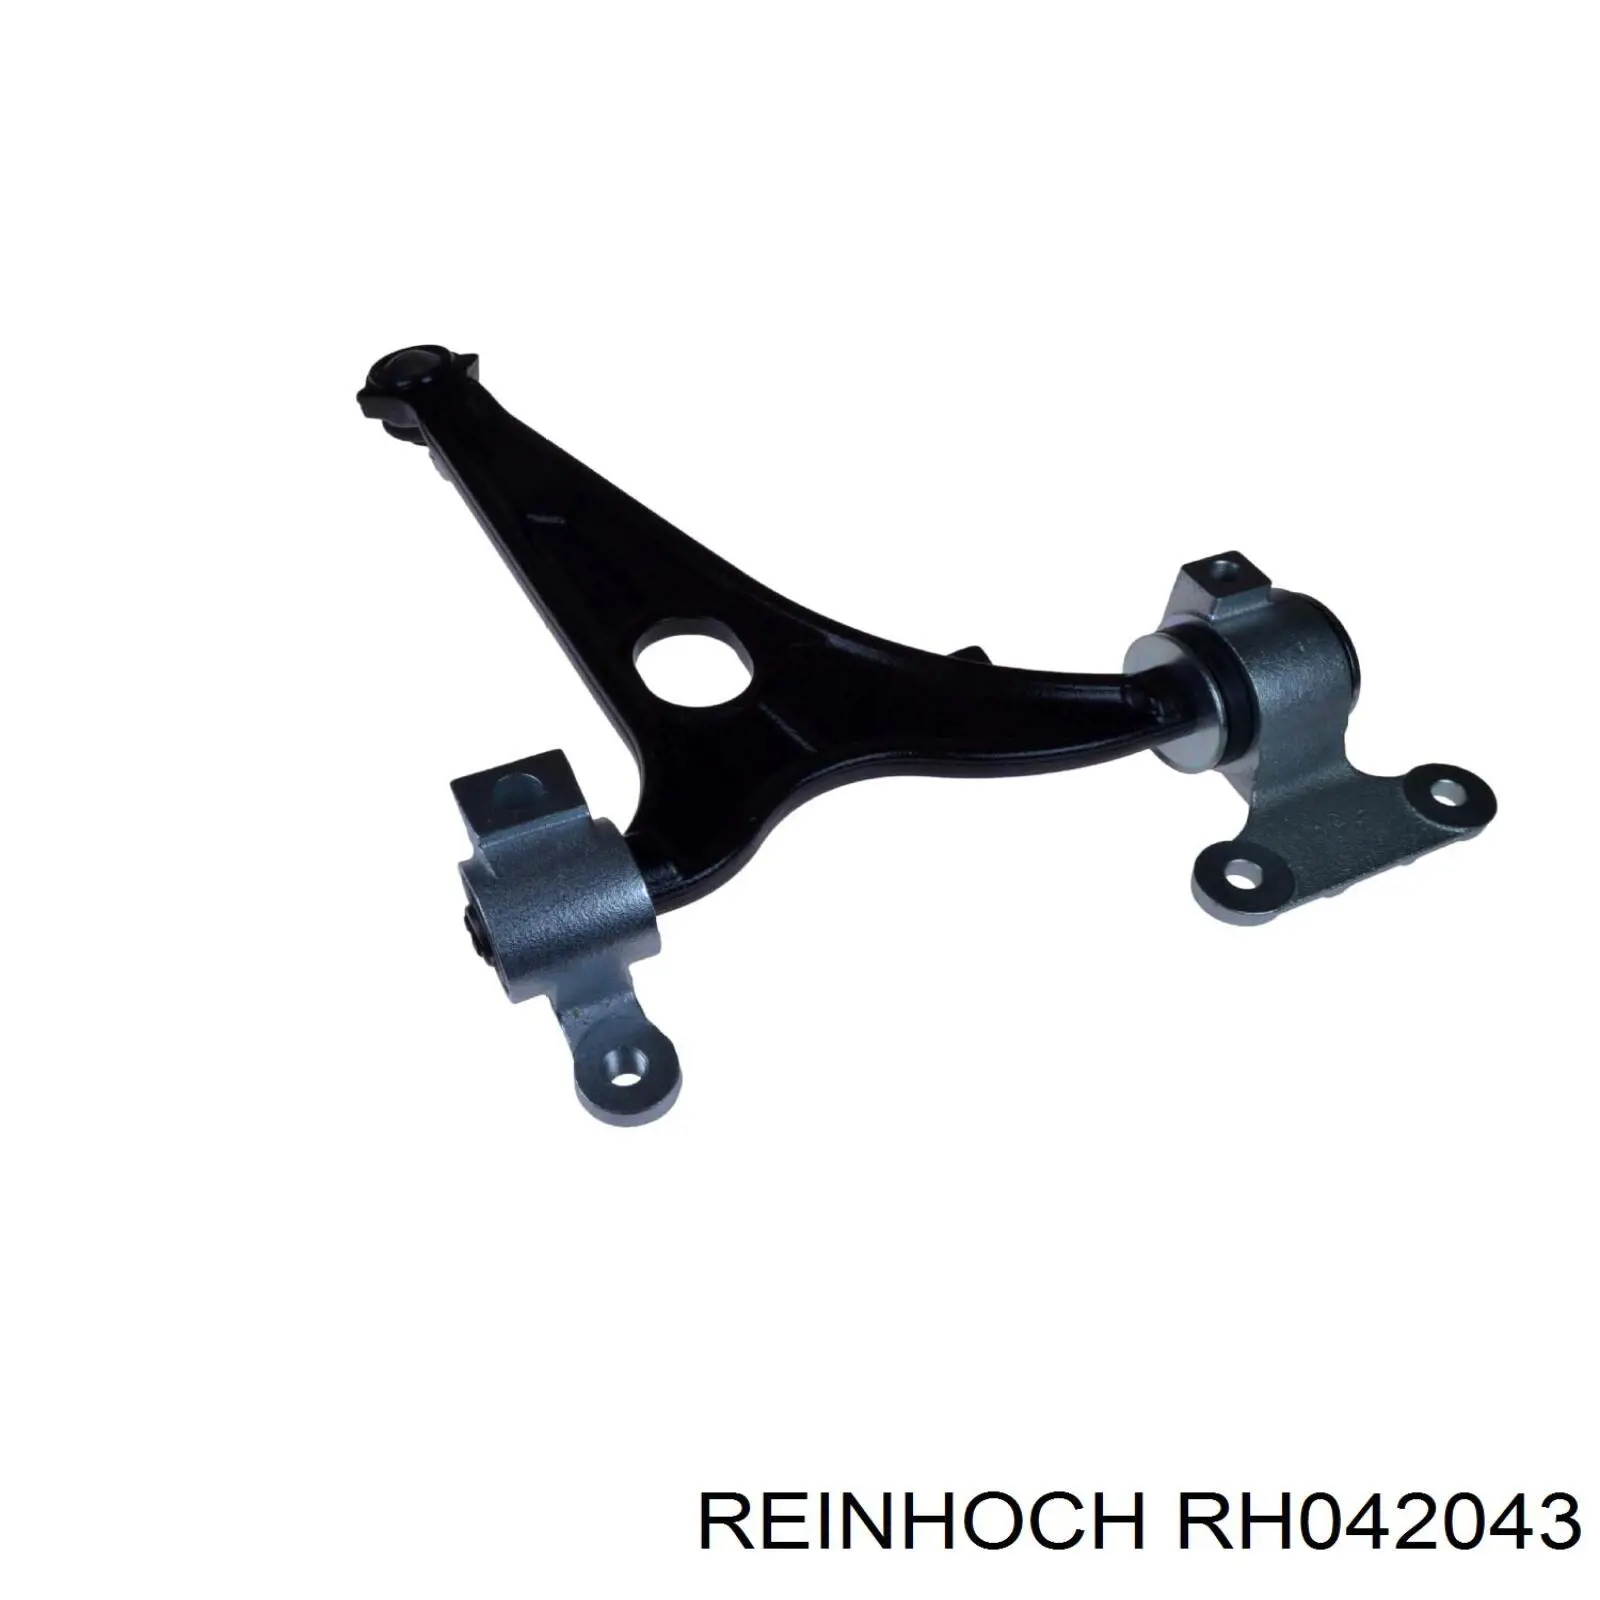 RH042043 Reinhoch рычаг передней подвески нижний левый